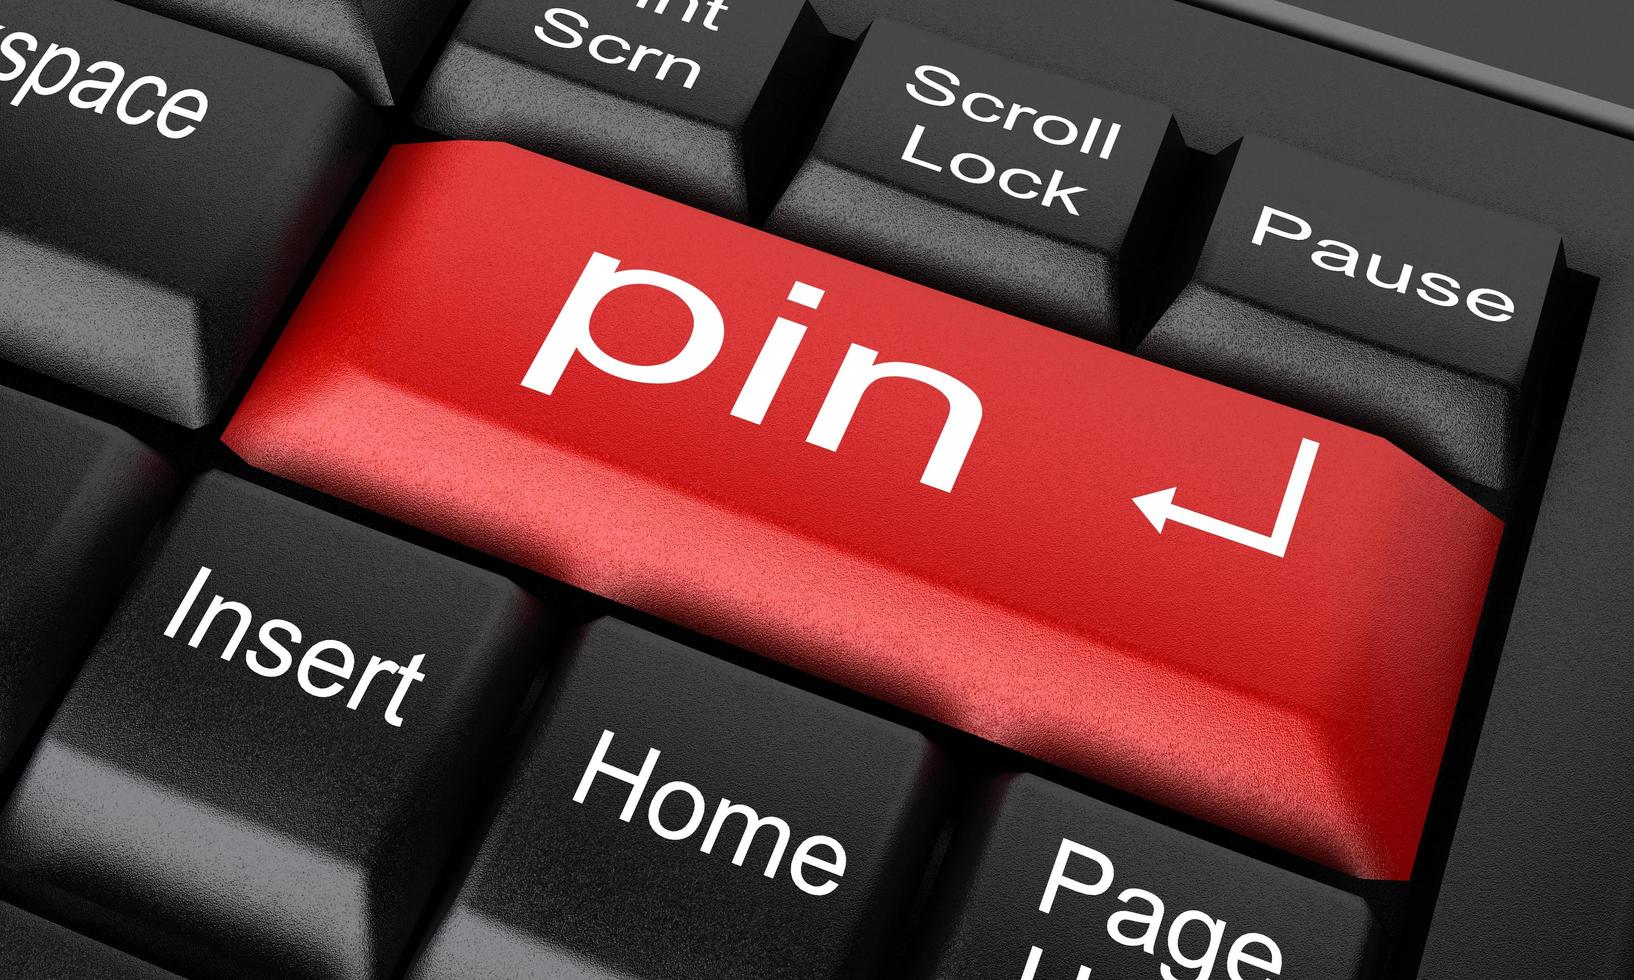 pin word en el botón rojo del teclado foto